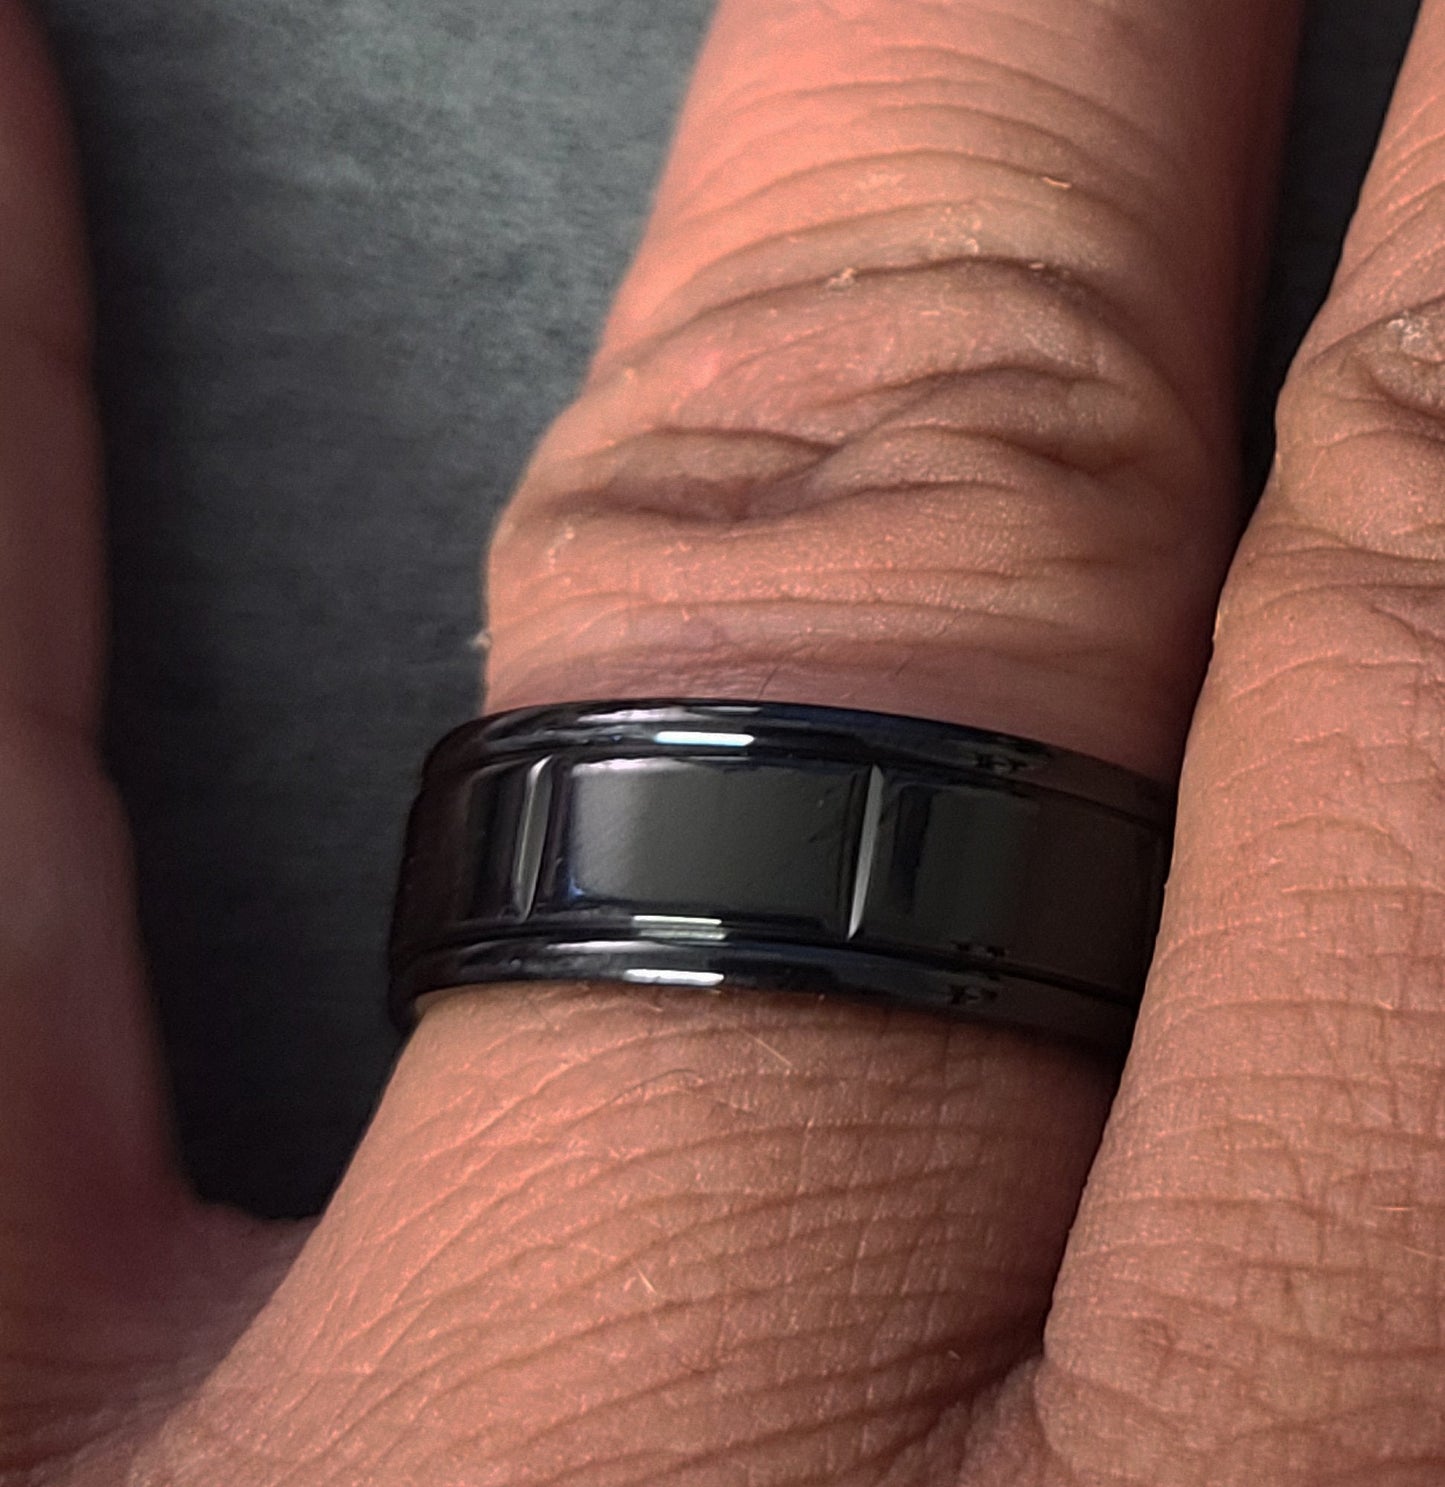 Think Engraved Promise Ring Custom Engraved Men's Black Promise Ring - Black Square Grooves Stainless Steel